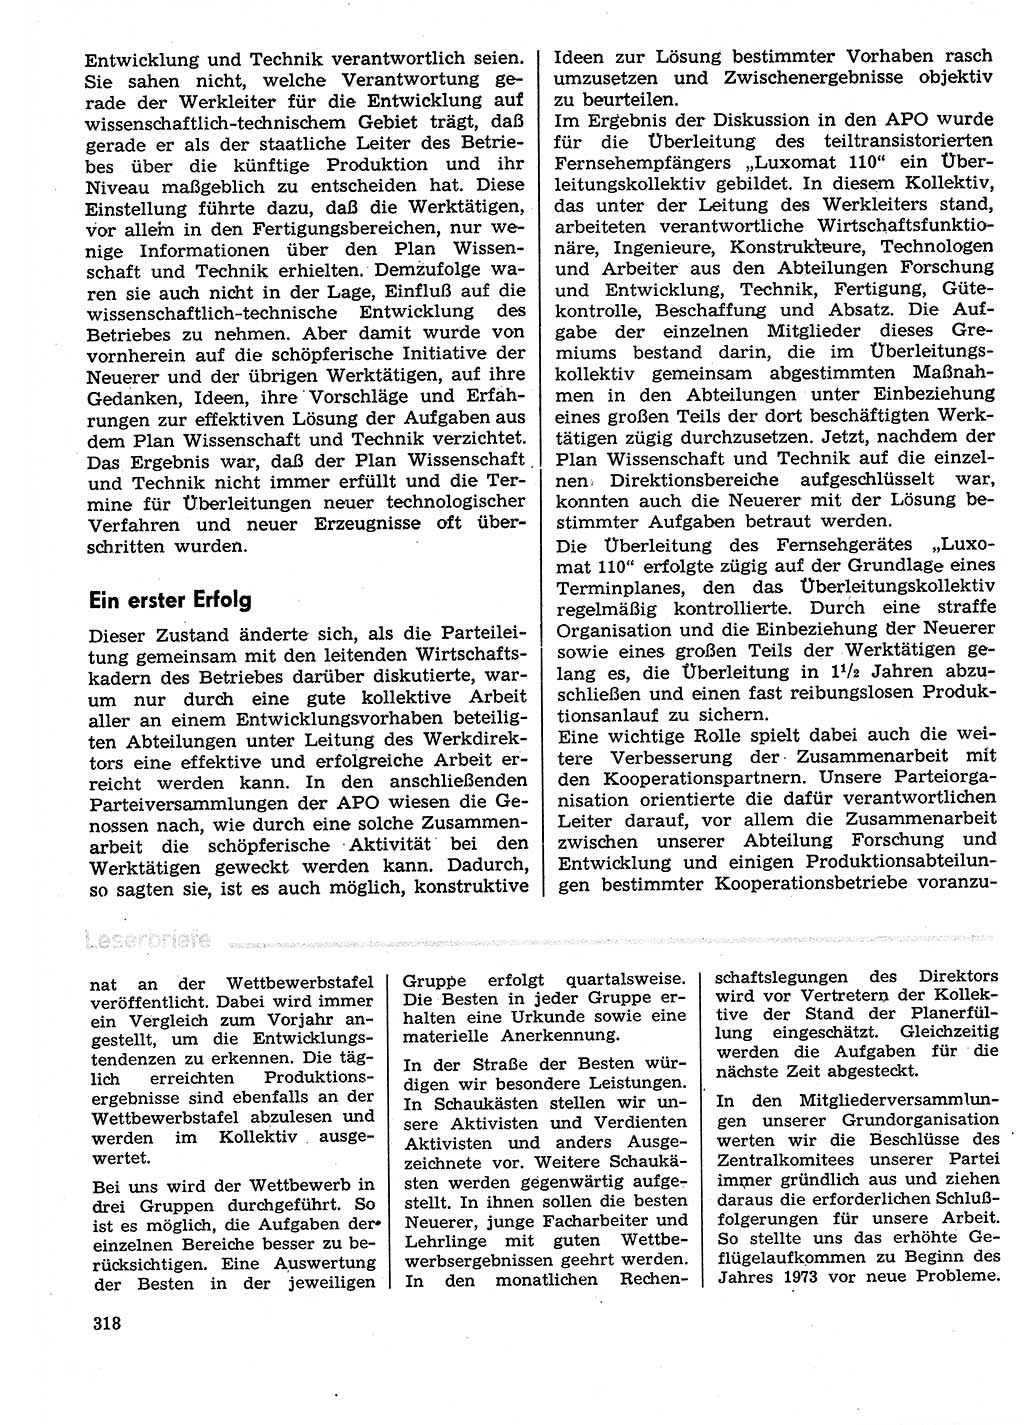 Neuer Weg (NW), Organ des Zentralkomitees (ZK) der SED (Sozialistische Einheitspartei Deutschlands) für Fragen des Parteilebens, 29. Jahrgang [Deutsche Demokratische Republik (DDR)] 1974, Seite 318 (NW ZK SED DDR 1974, S. 318)